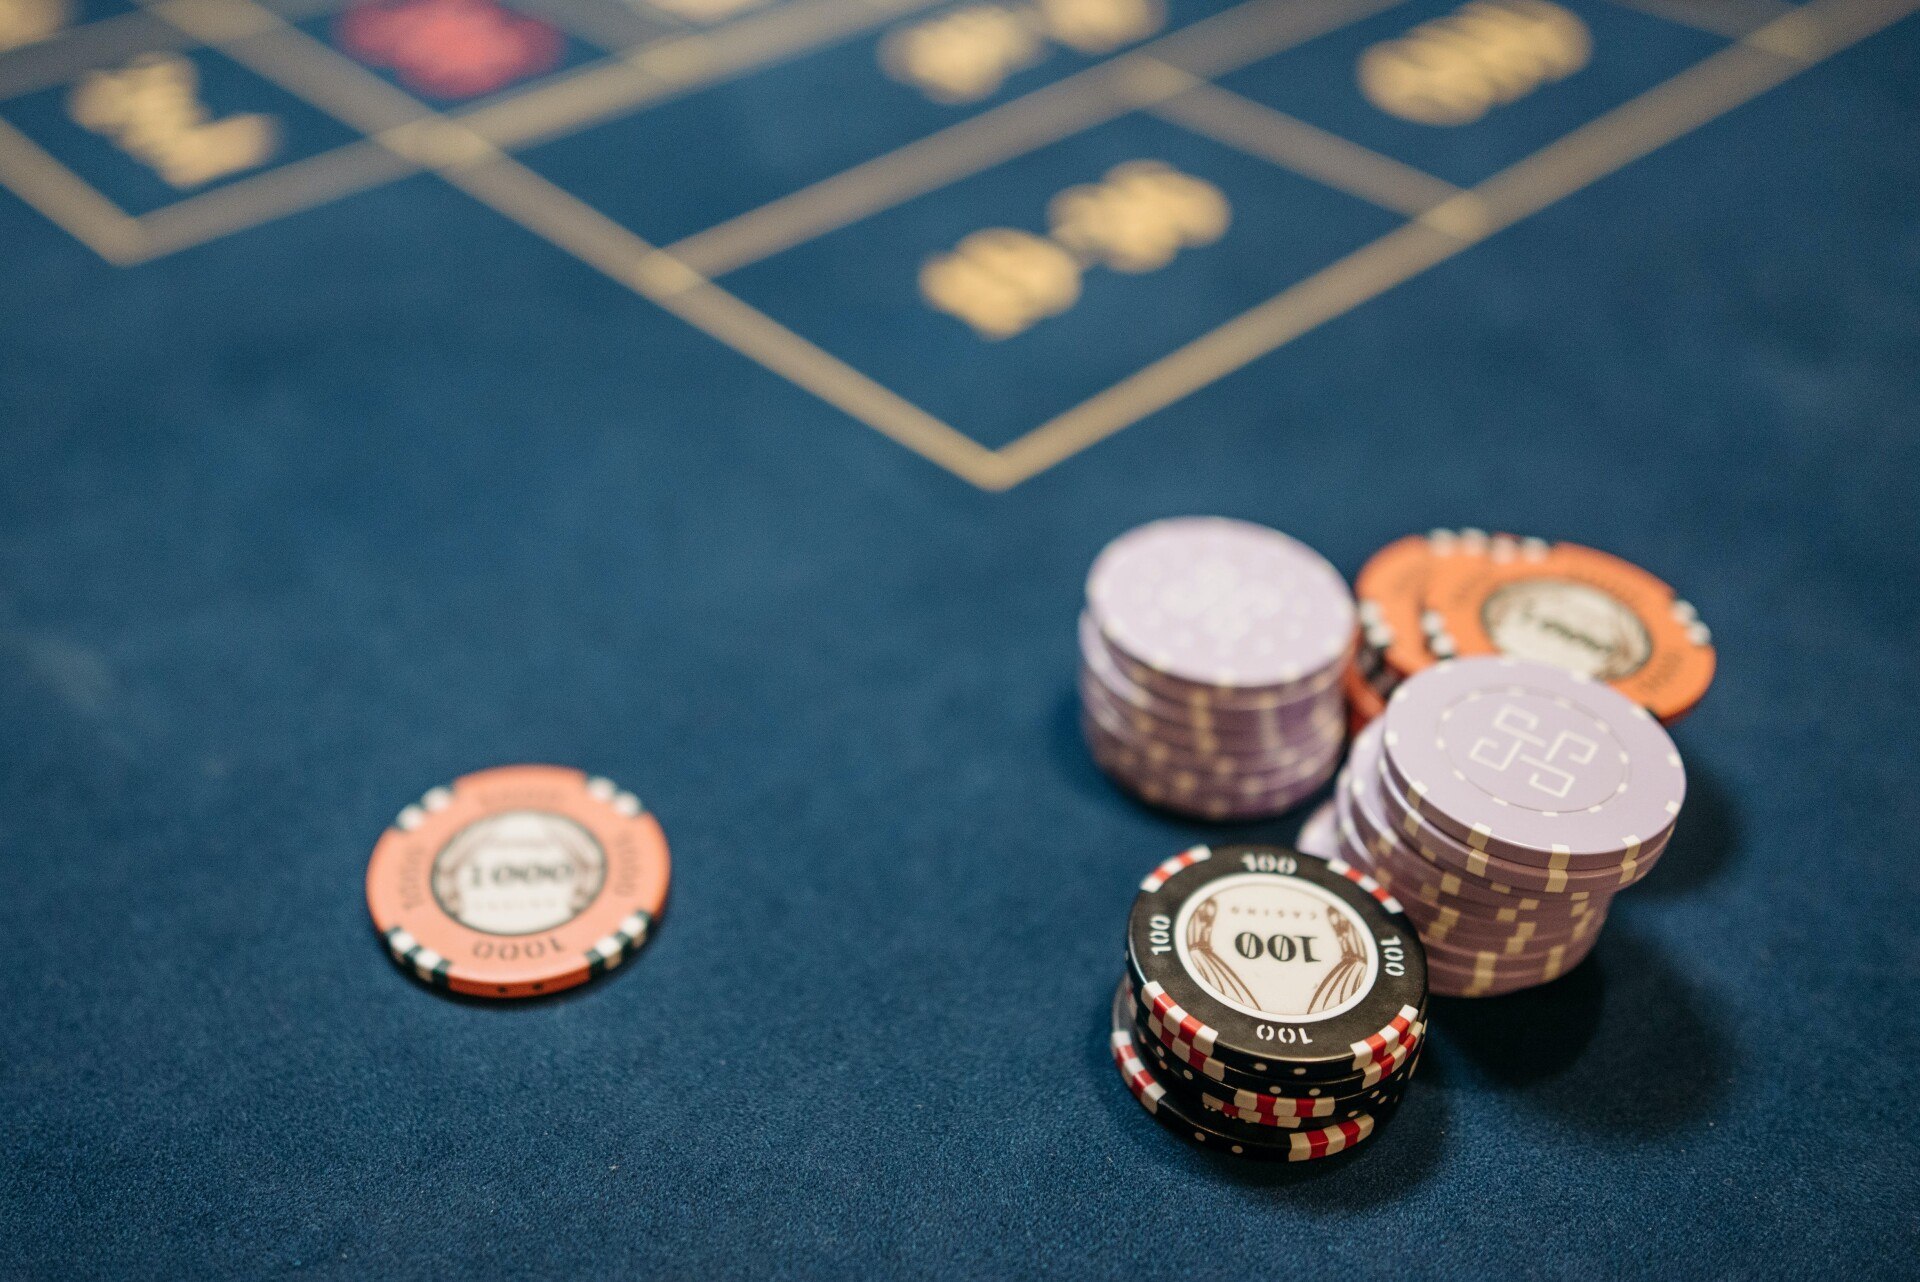 Οι κορυφαίες προσφορές μπόνους χωρίς κατάθεση σε online καζίνο